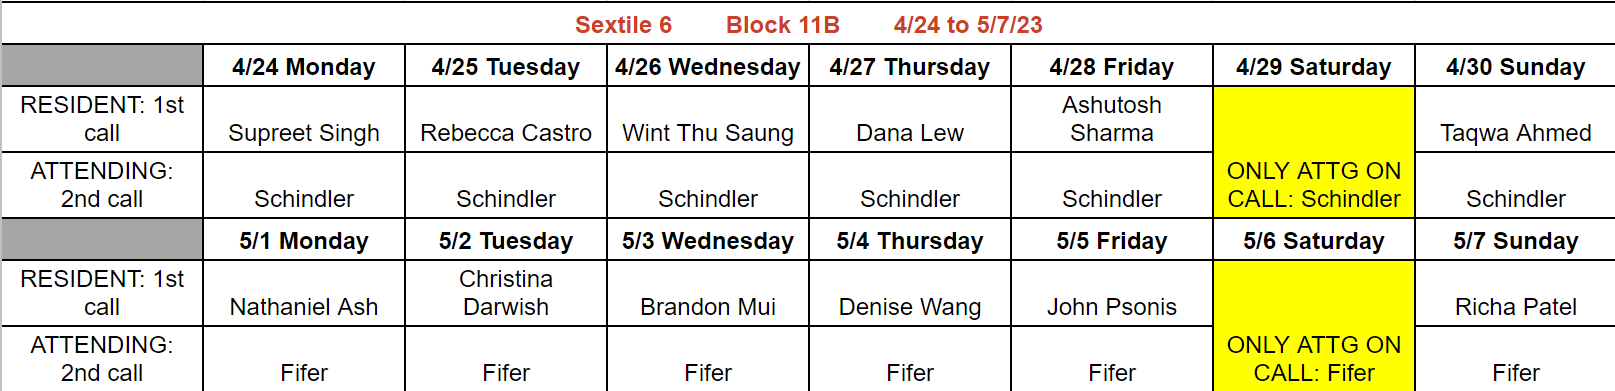 Block 11B - Apr 24 - May 7, 2023